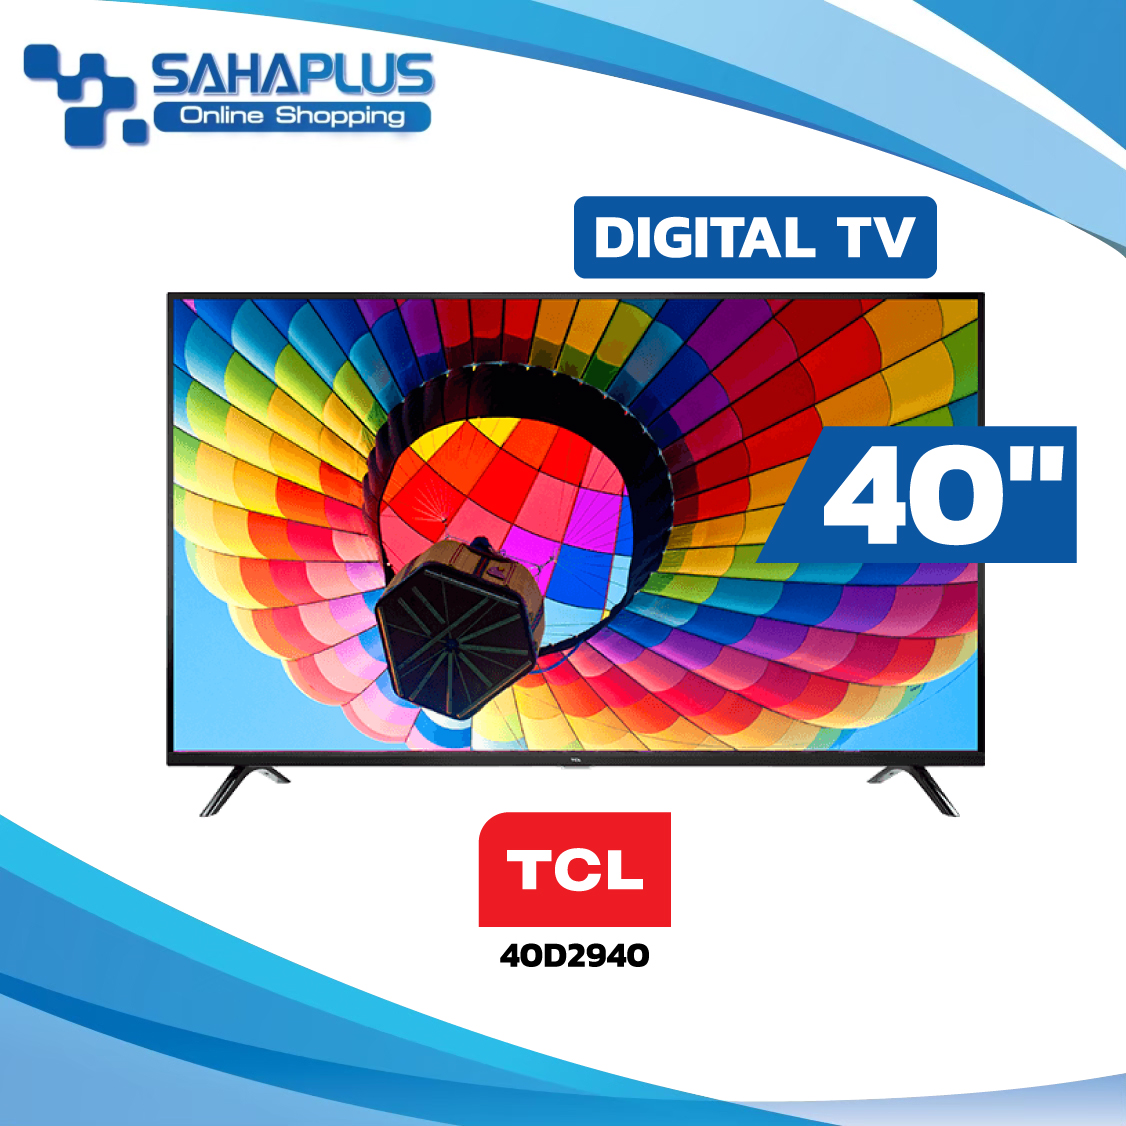 TV Digital ทีวี TCL รุ่น 40D2940 ขนาด 40 นิ้ว ( รับประกันศูนย์ 1 ปี )